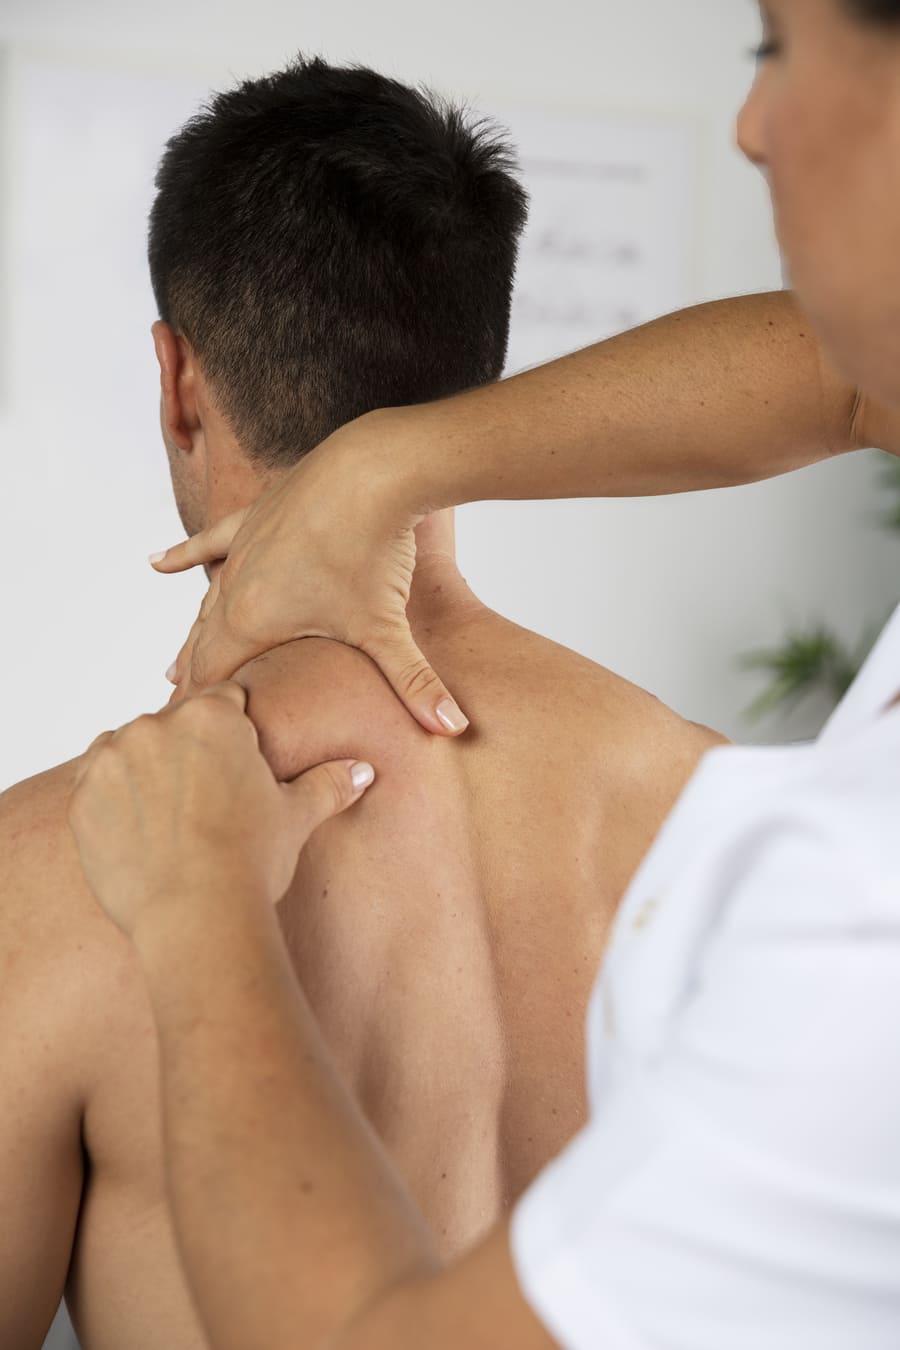 fisioterapeuta realizando masaje terapéutico cliente